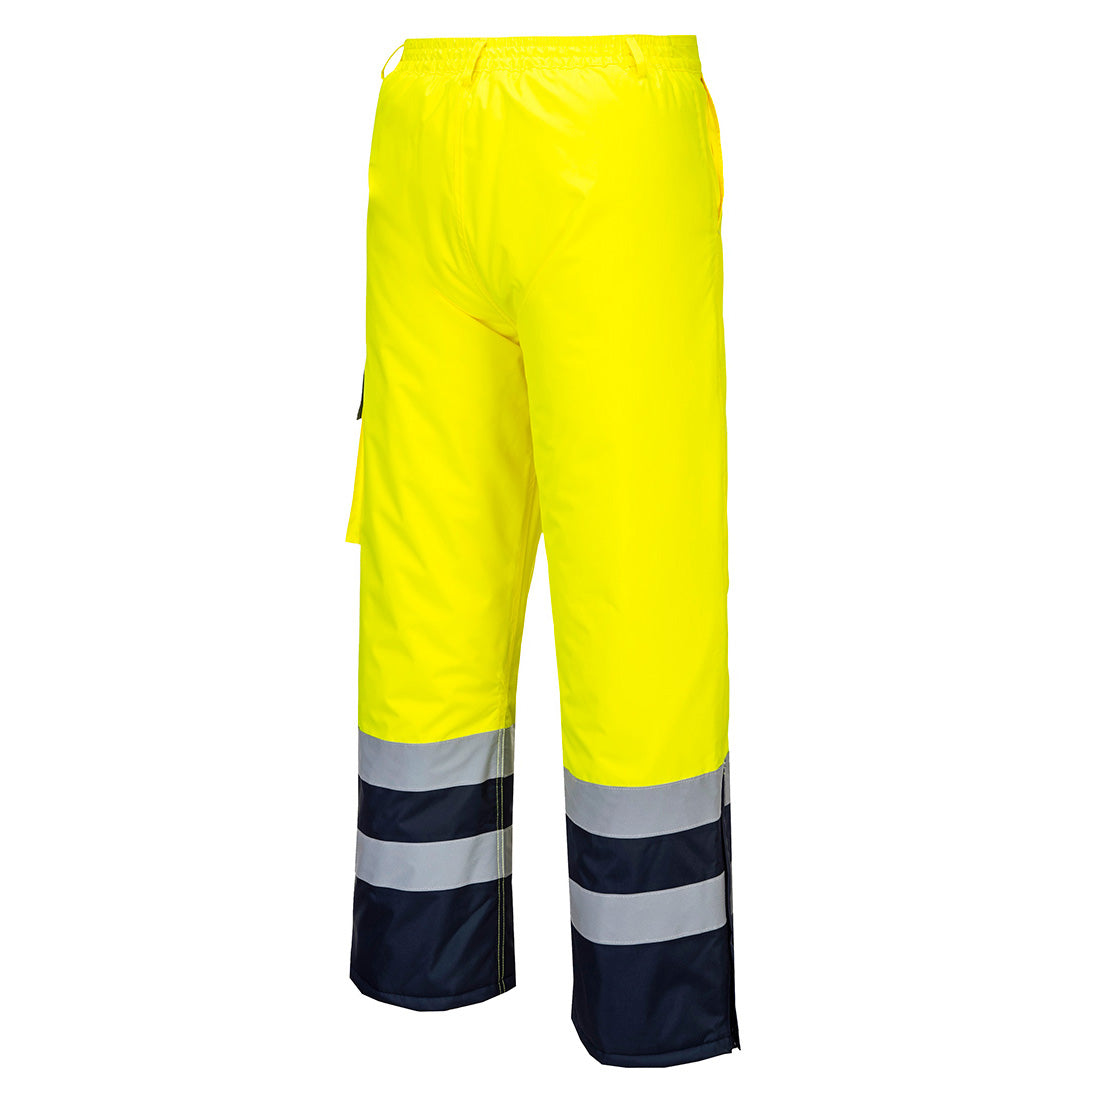 Portwest S686 Hi Vis Contrast Trousers - Lined 1#colour_yellow-navy 2#colour_yellow-navy 3#colour_yellow-navy